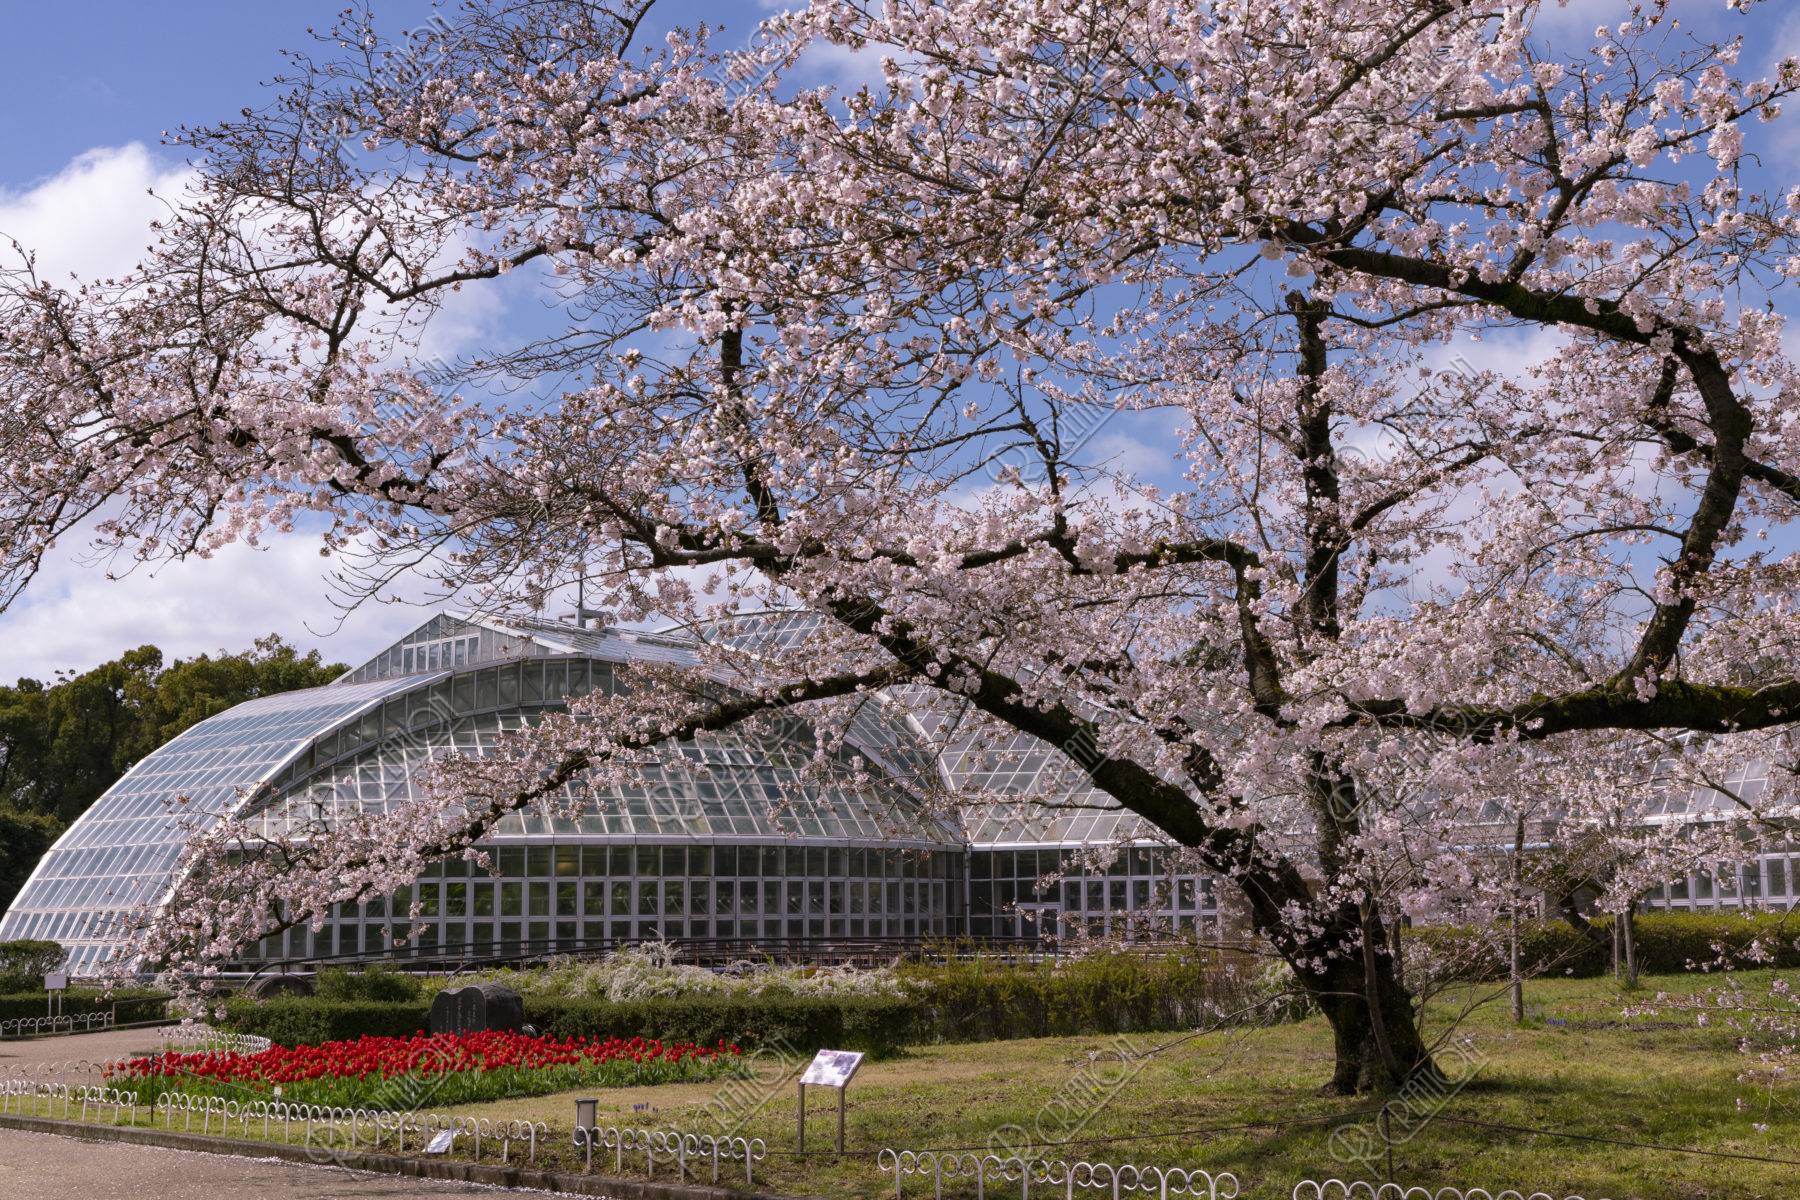 京都府立植物園 観覧温室と桜